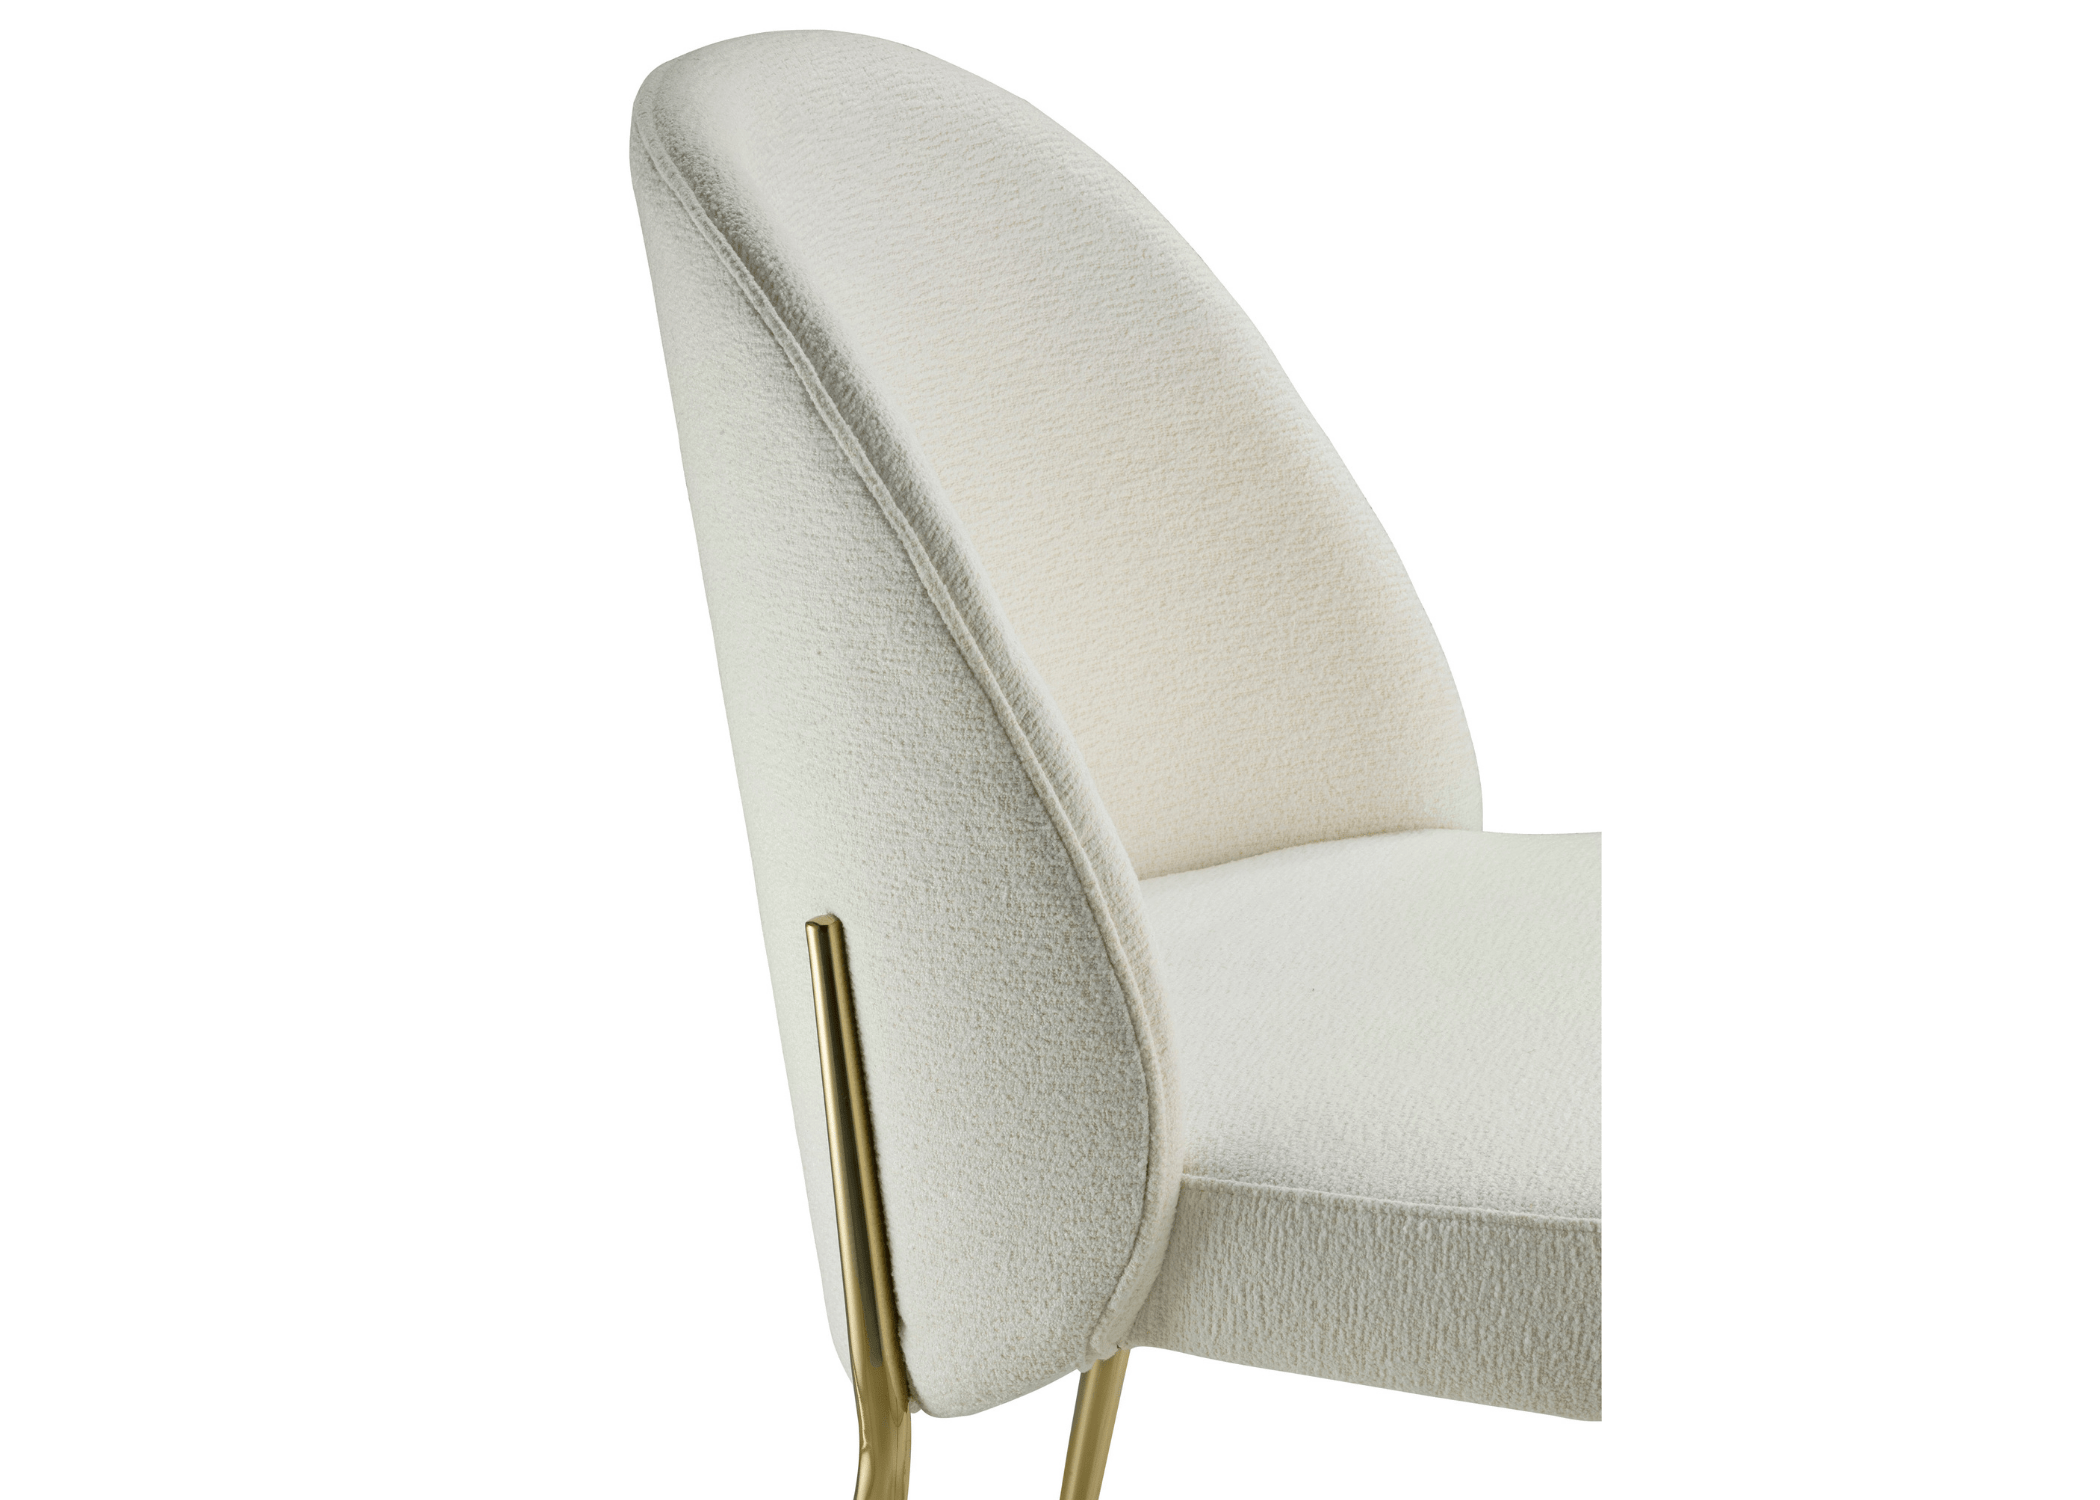 Seu assento ergonômico oferece não apenas um design atraente, mas também conforto excepcional para longas horas de uso.